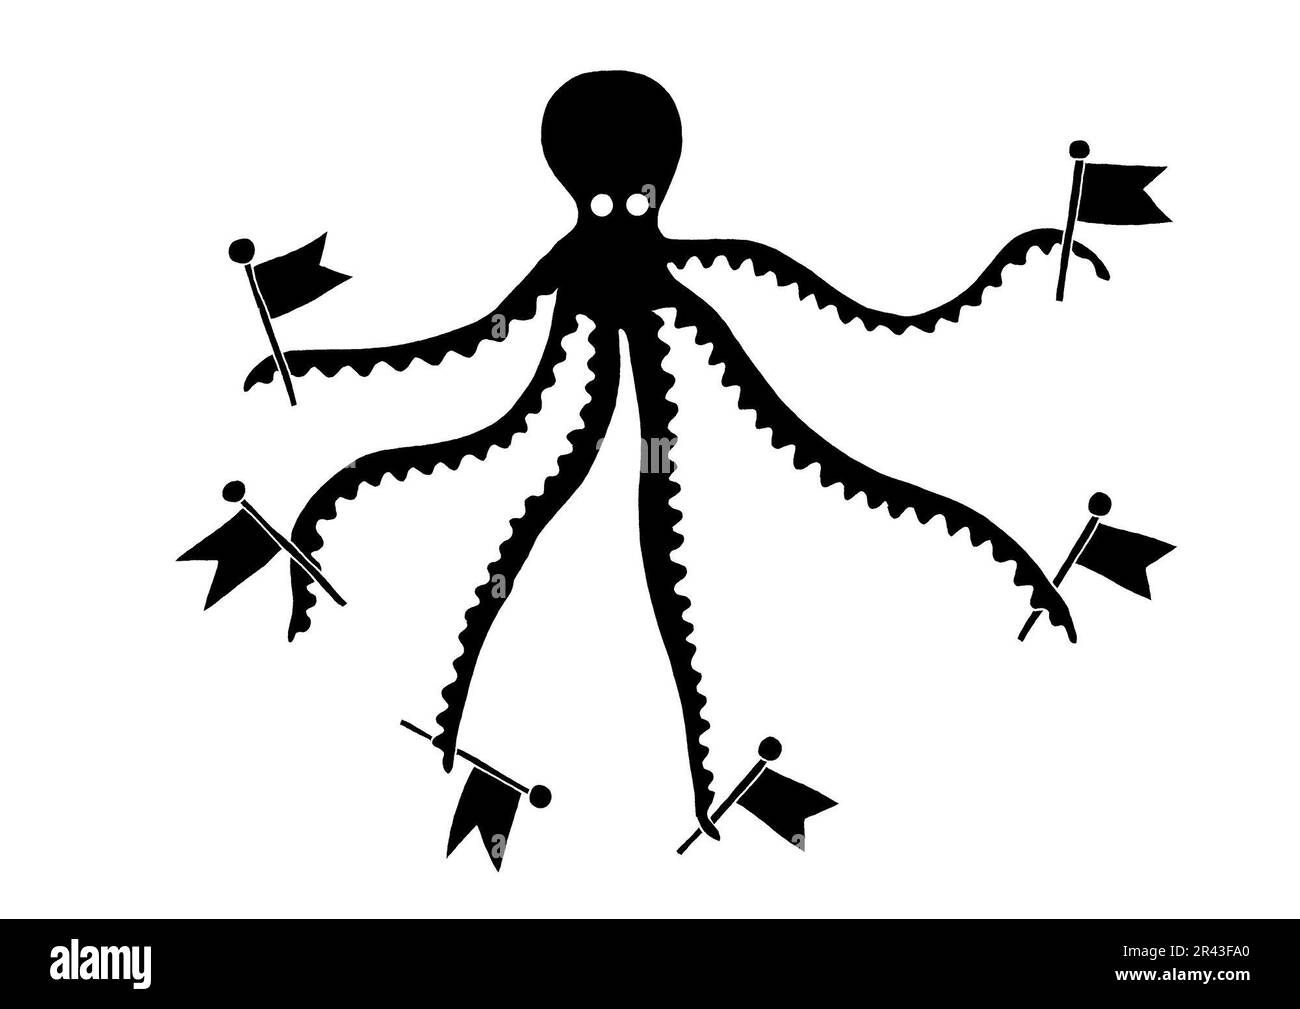 Illustration en noir et blanc de poulpe portant des drapeaux dans les tentacules, illustrant la propagation du colonialisme Banque D'Images